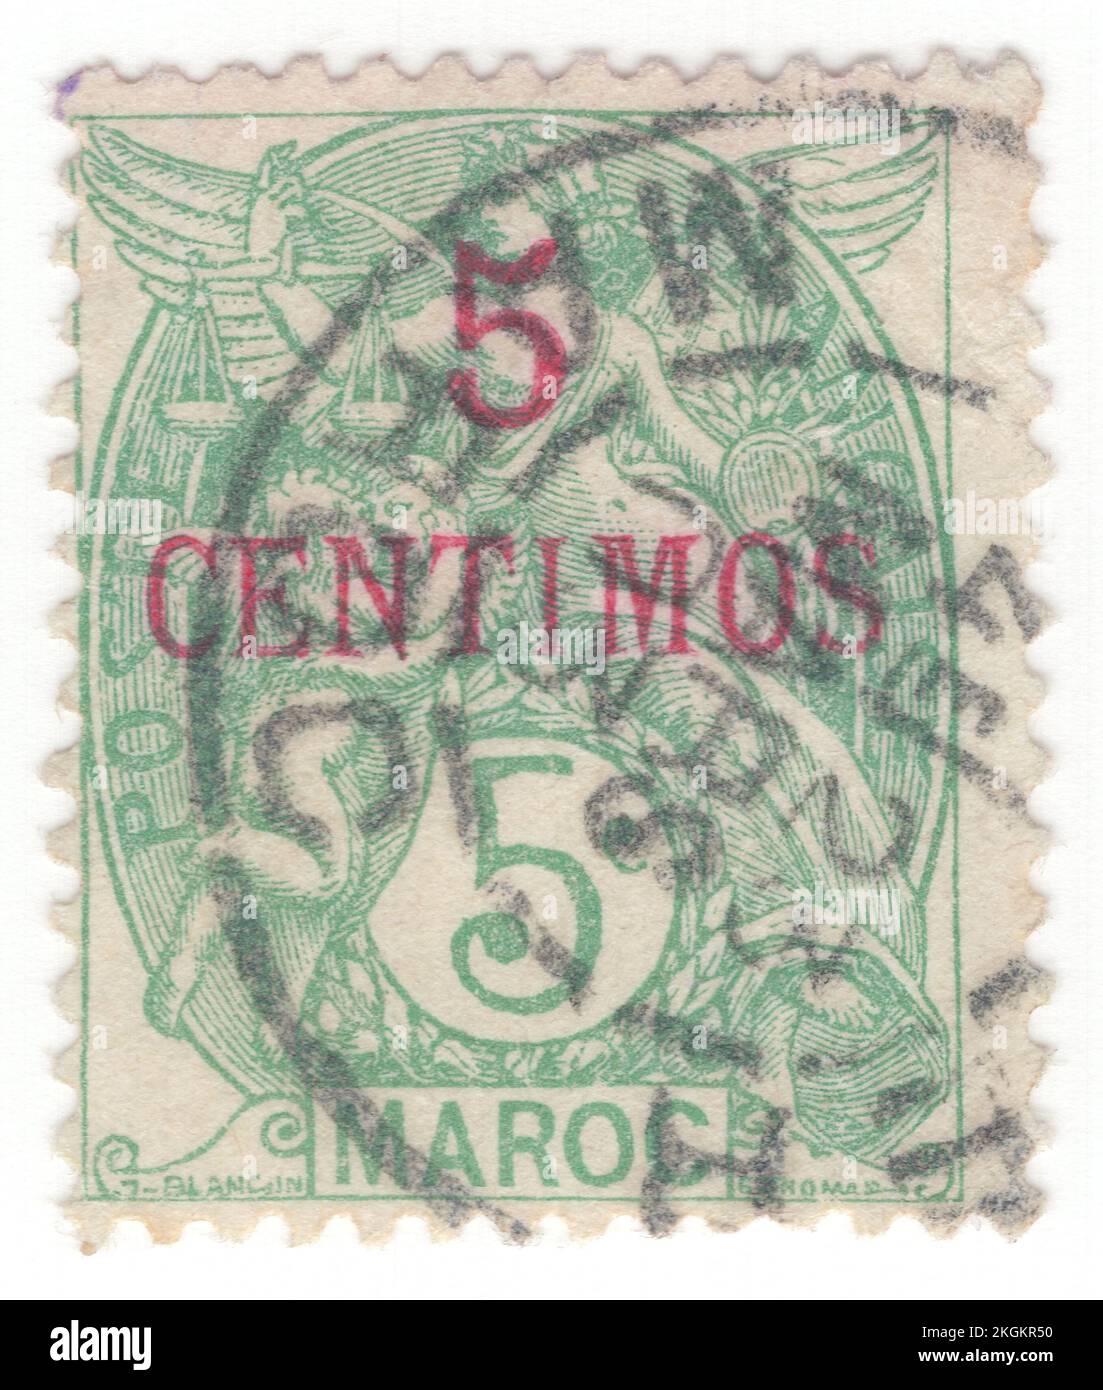 FRANZÖSISCH-MAROKKO - 1902: Eine grüne Briefmarke mit 5 Centimus auf 5 Centimes, die die alte Göttin als Allegorie "Freiheit, Gleichheit, Brüderlichkeit" darstellt. Französische Standardausgabe "Blanc", entworfen von Paul-Joseph Blanc. Capital — Rabat. Das französische Marokko war von 1912 bis 1956 ein französisches Protektorat, als es zusammen mit den spanischen und tangischen Zonen Marokkos das unabhängige Land Marokko wurde. In der internationalen Zone Tanger im Norden Marokkos wurden Briefmarken mit der Aufschrift „Tanger“ verwendet Stockfoto